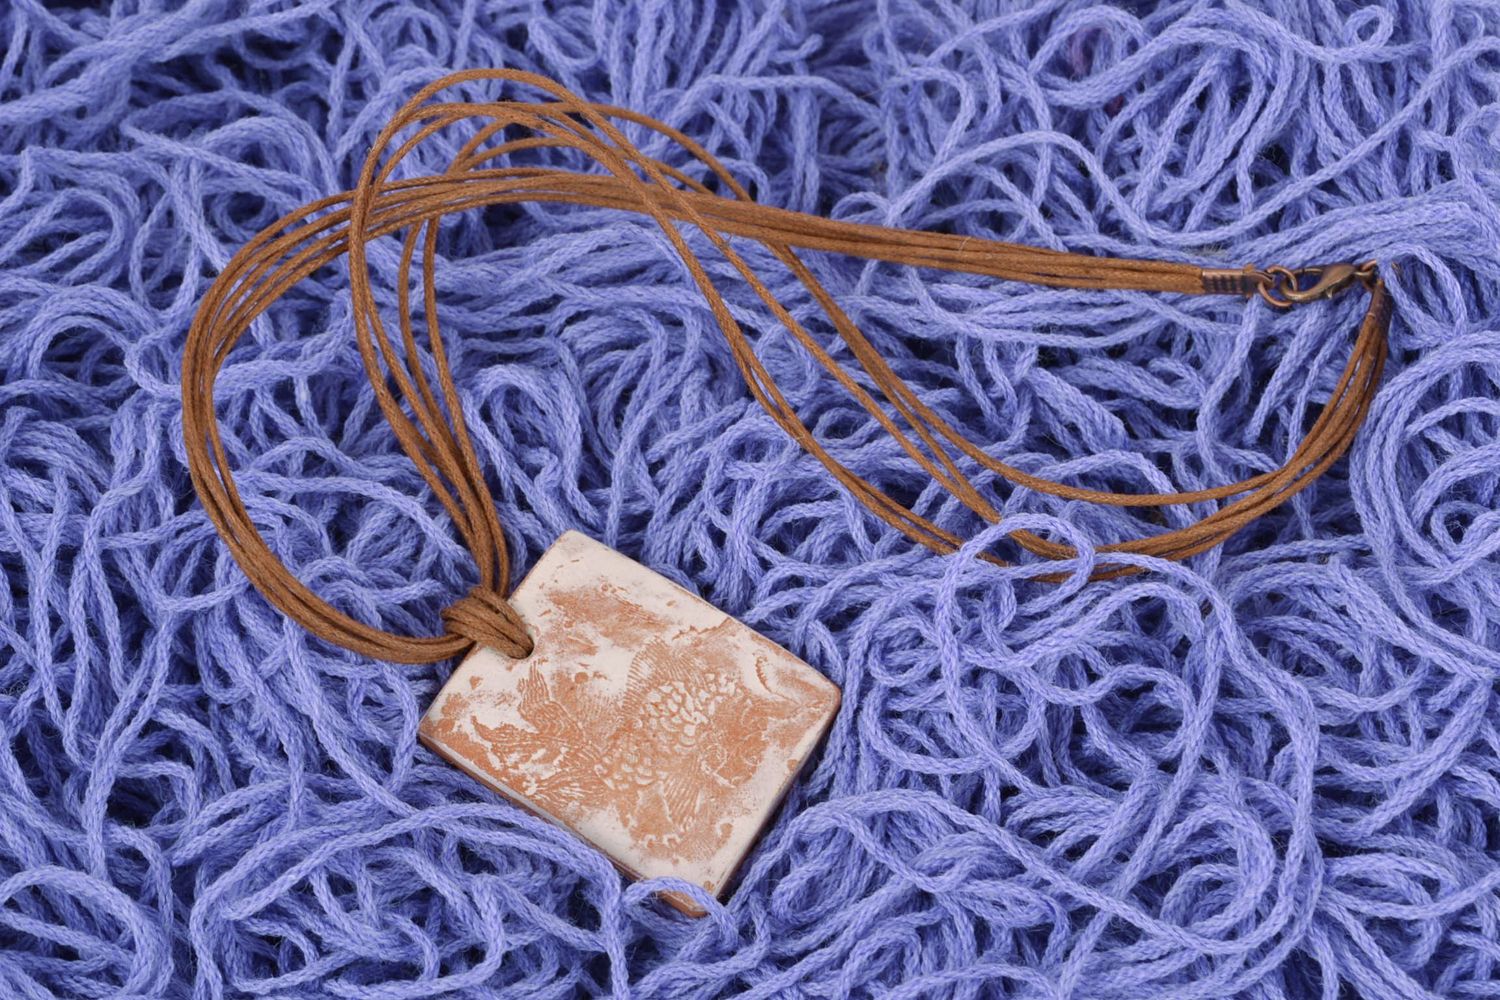 Rectangular ceramic pendant with cord photo 1